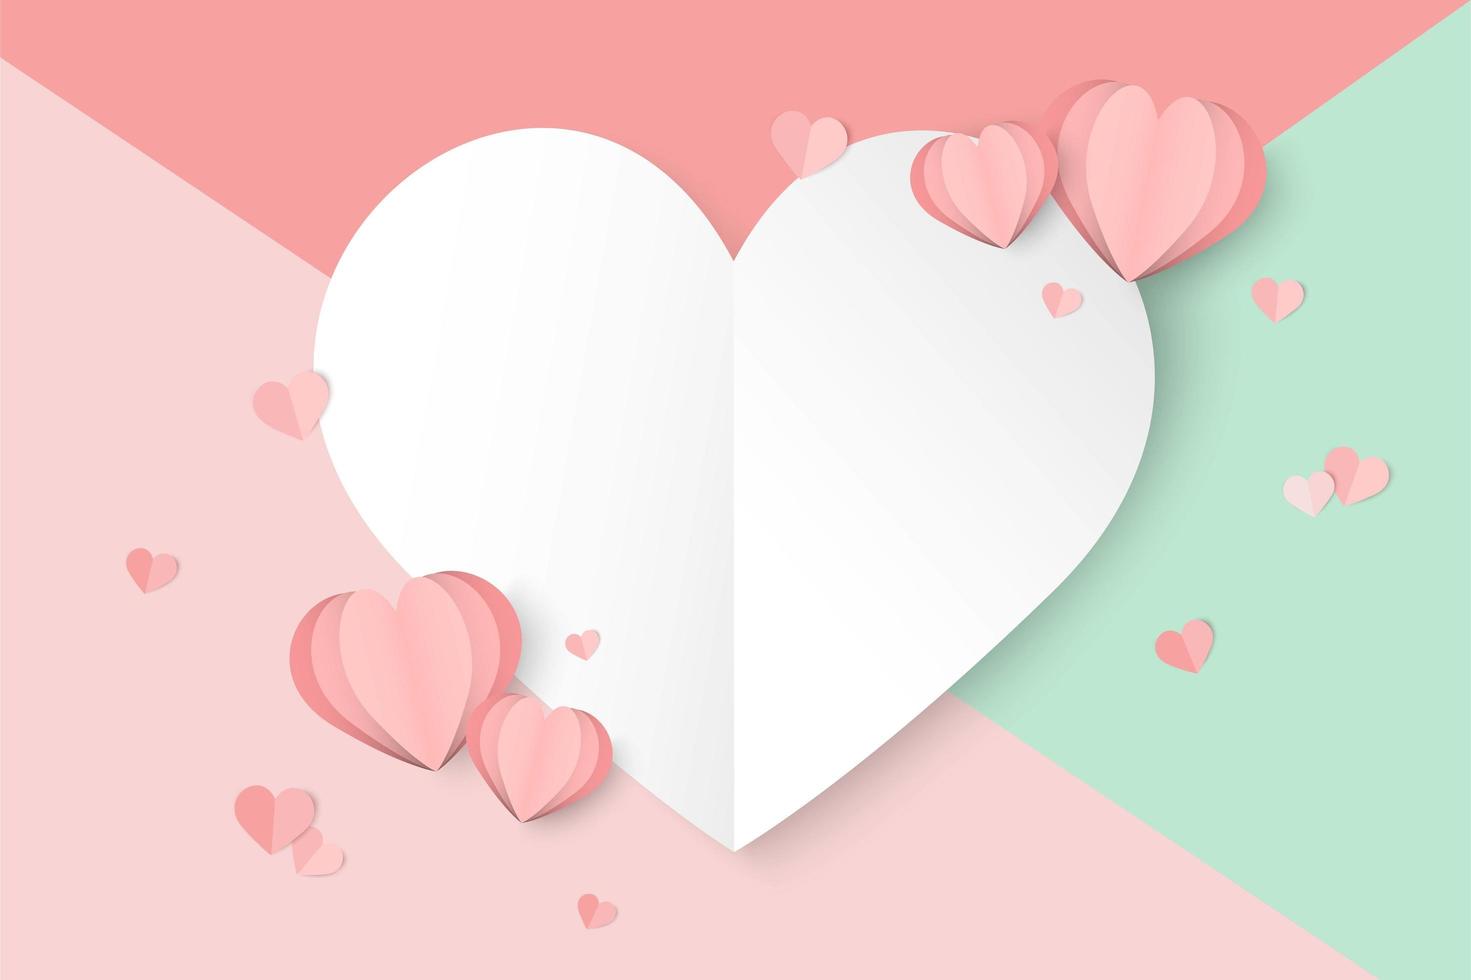 Fondo del día de San Valentín con secciones coloridas y corazones de papel cortado vector